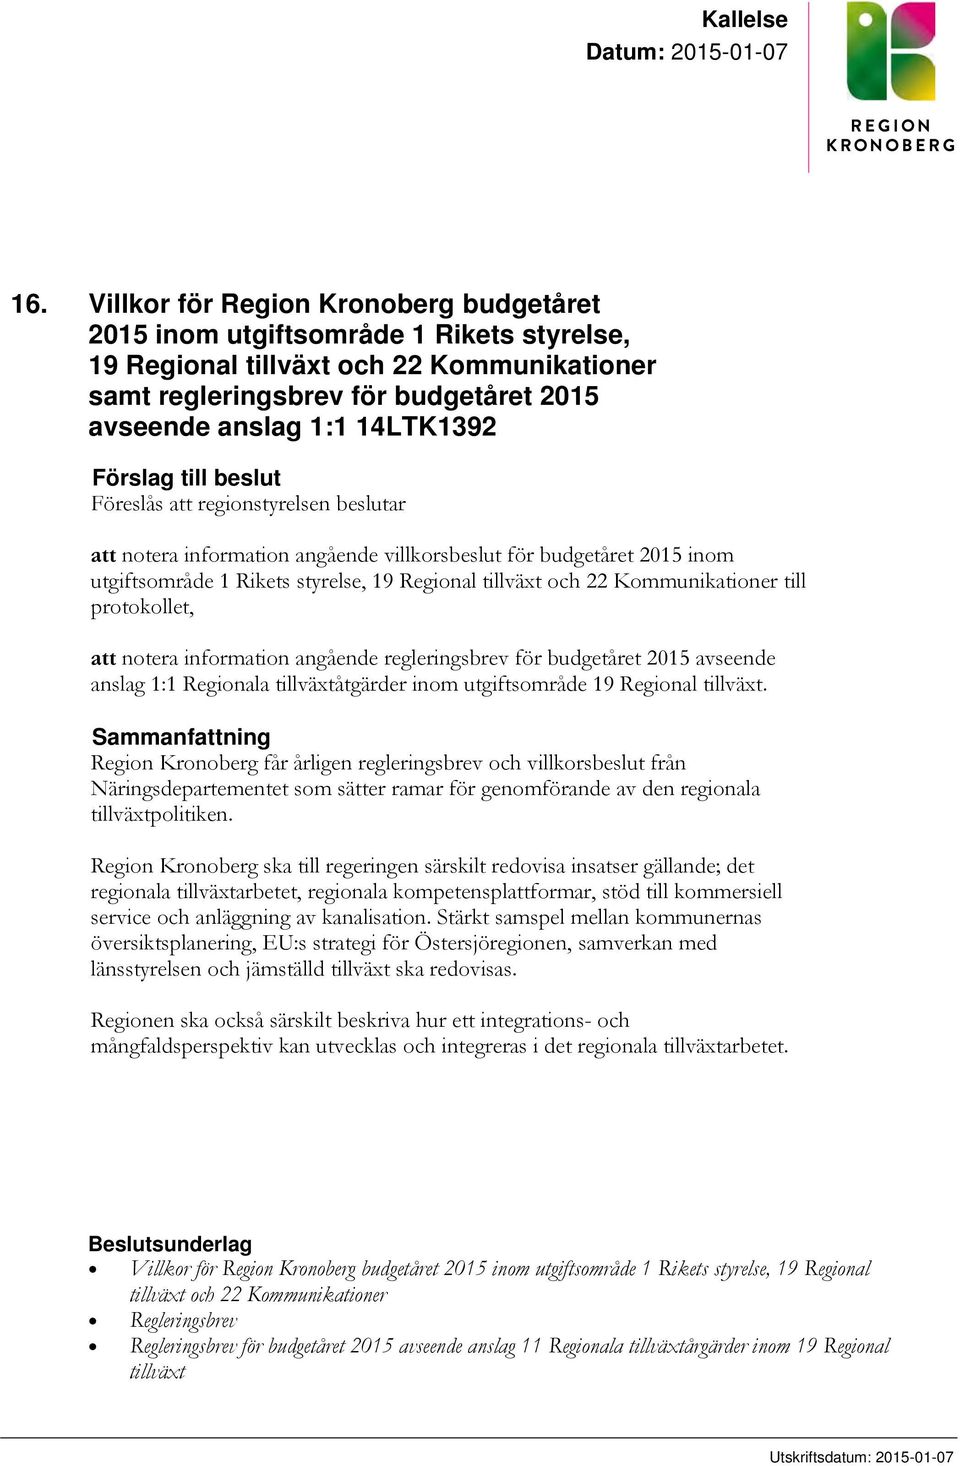 Förslag till beslut Föreslås att regionstyrelsen beslutar att notera information angående villkorsbeslut för budgetåret 2015 inom utgiftsområde 1 Rikets styrelse, 19 Regional tillväxt och 22